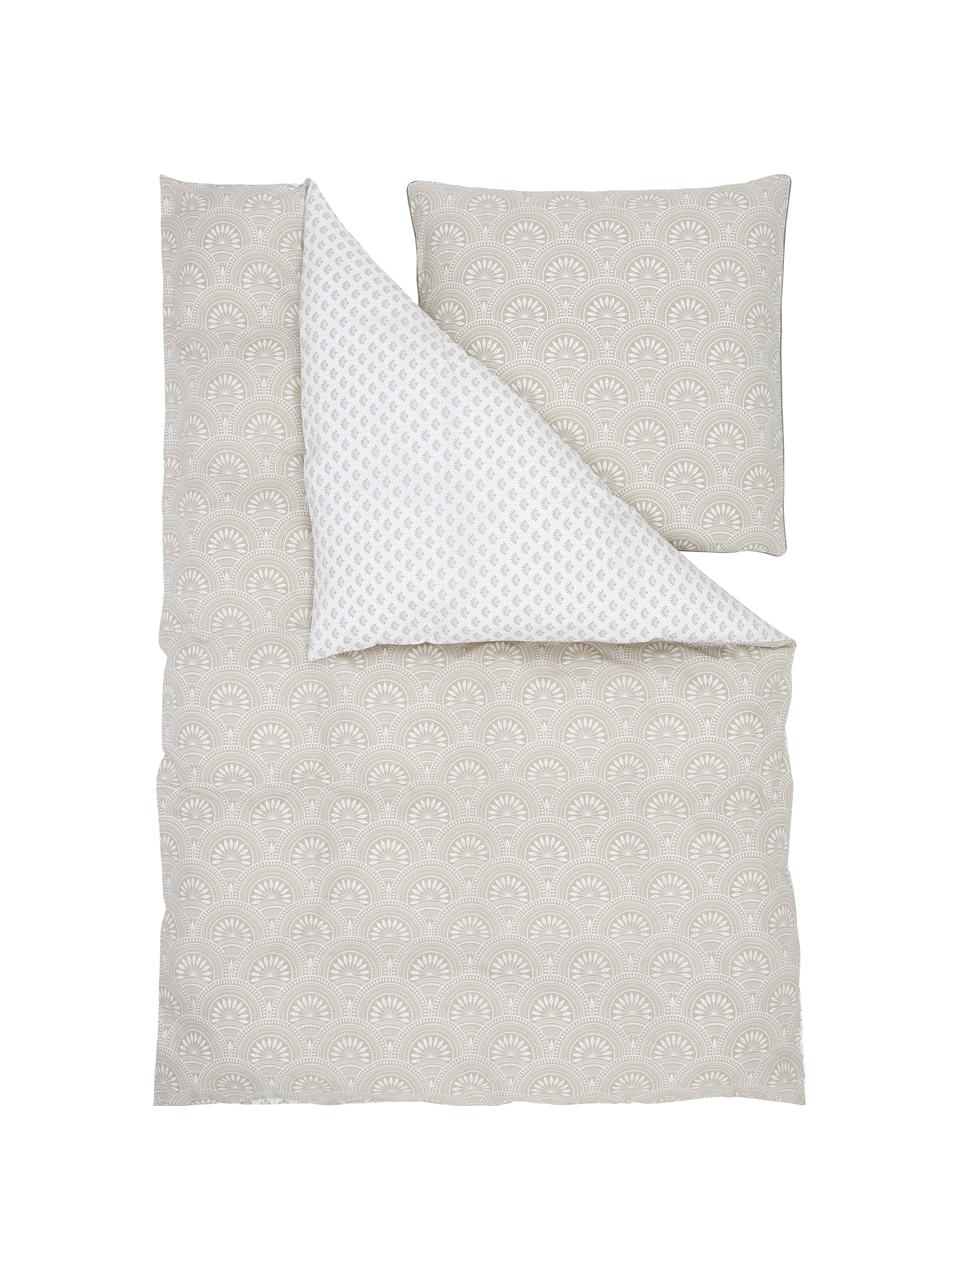 Vzorovaná obojstranná posteľná bielizeň z organickej bavlny Tiara, Svetlobéžová, biela, 135 x 200 cm + 1 vankúš 80 x 80 cm